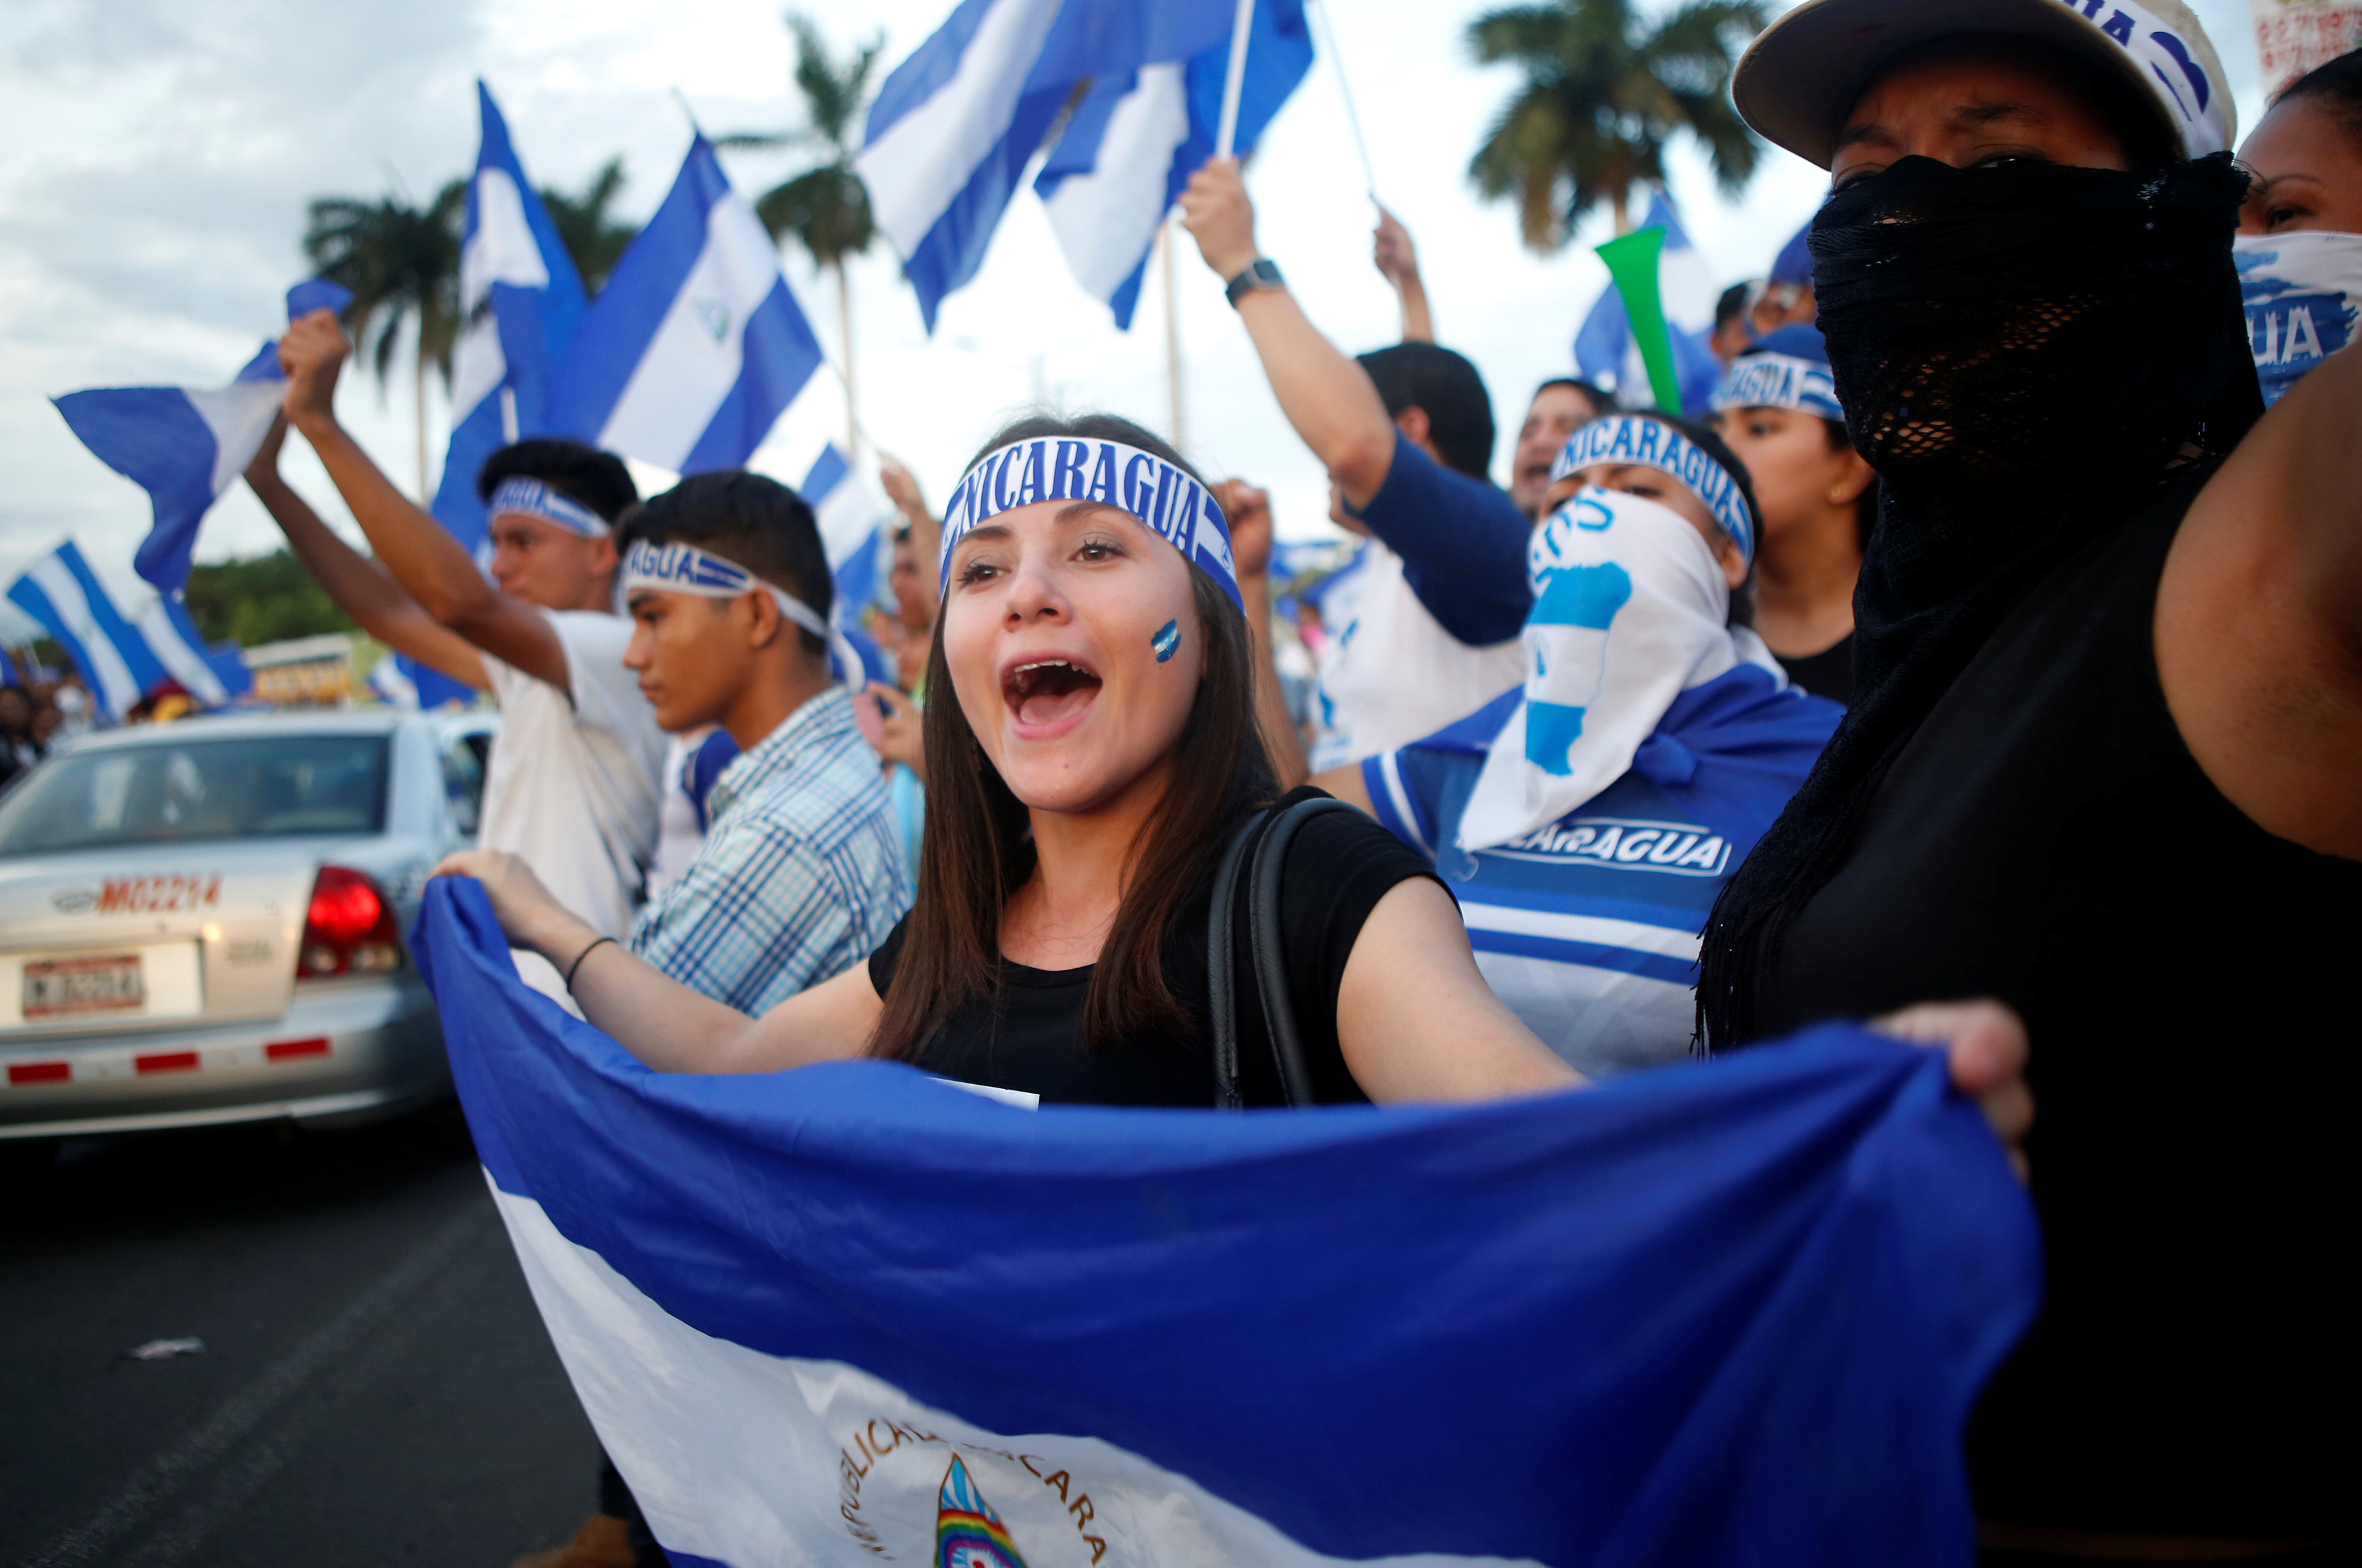 Gobierno Nicaragua y manifestantes acuerdan tregua 48 horas